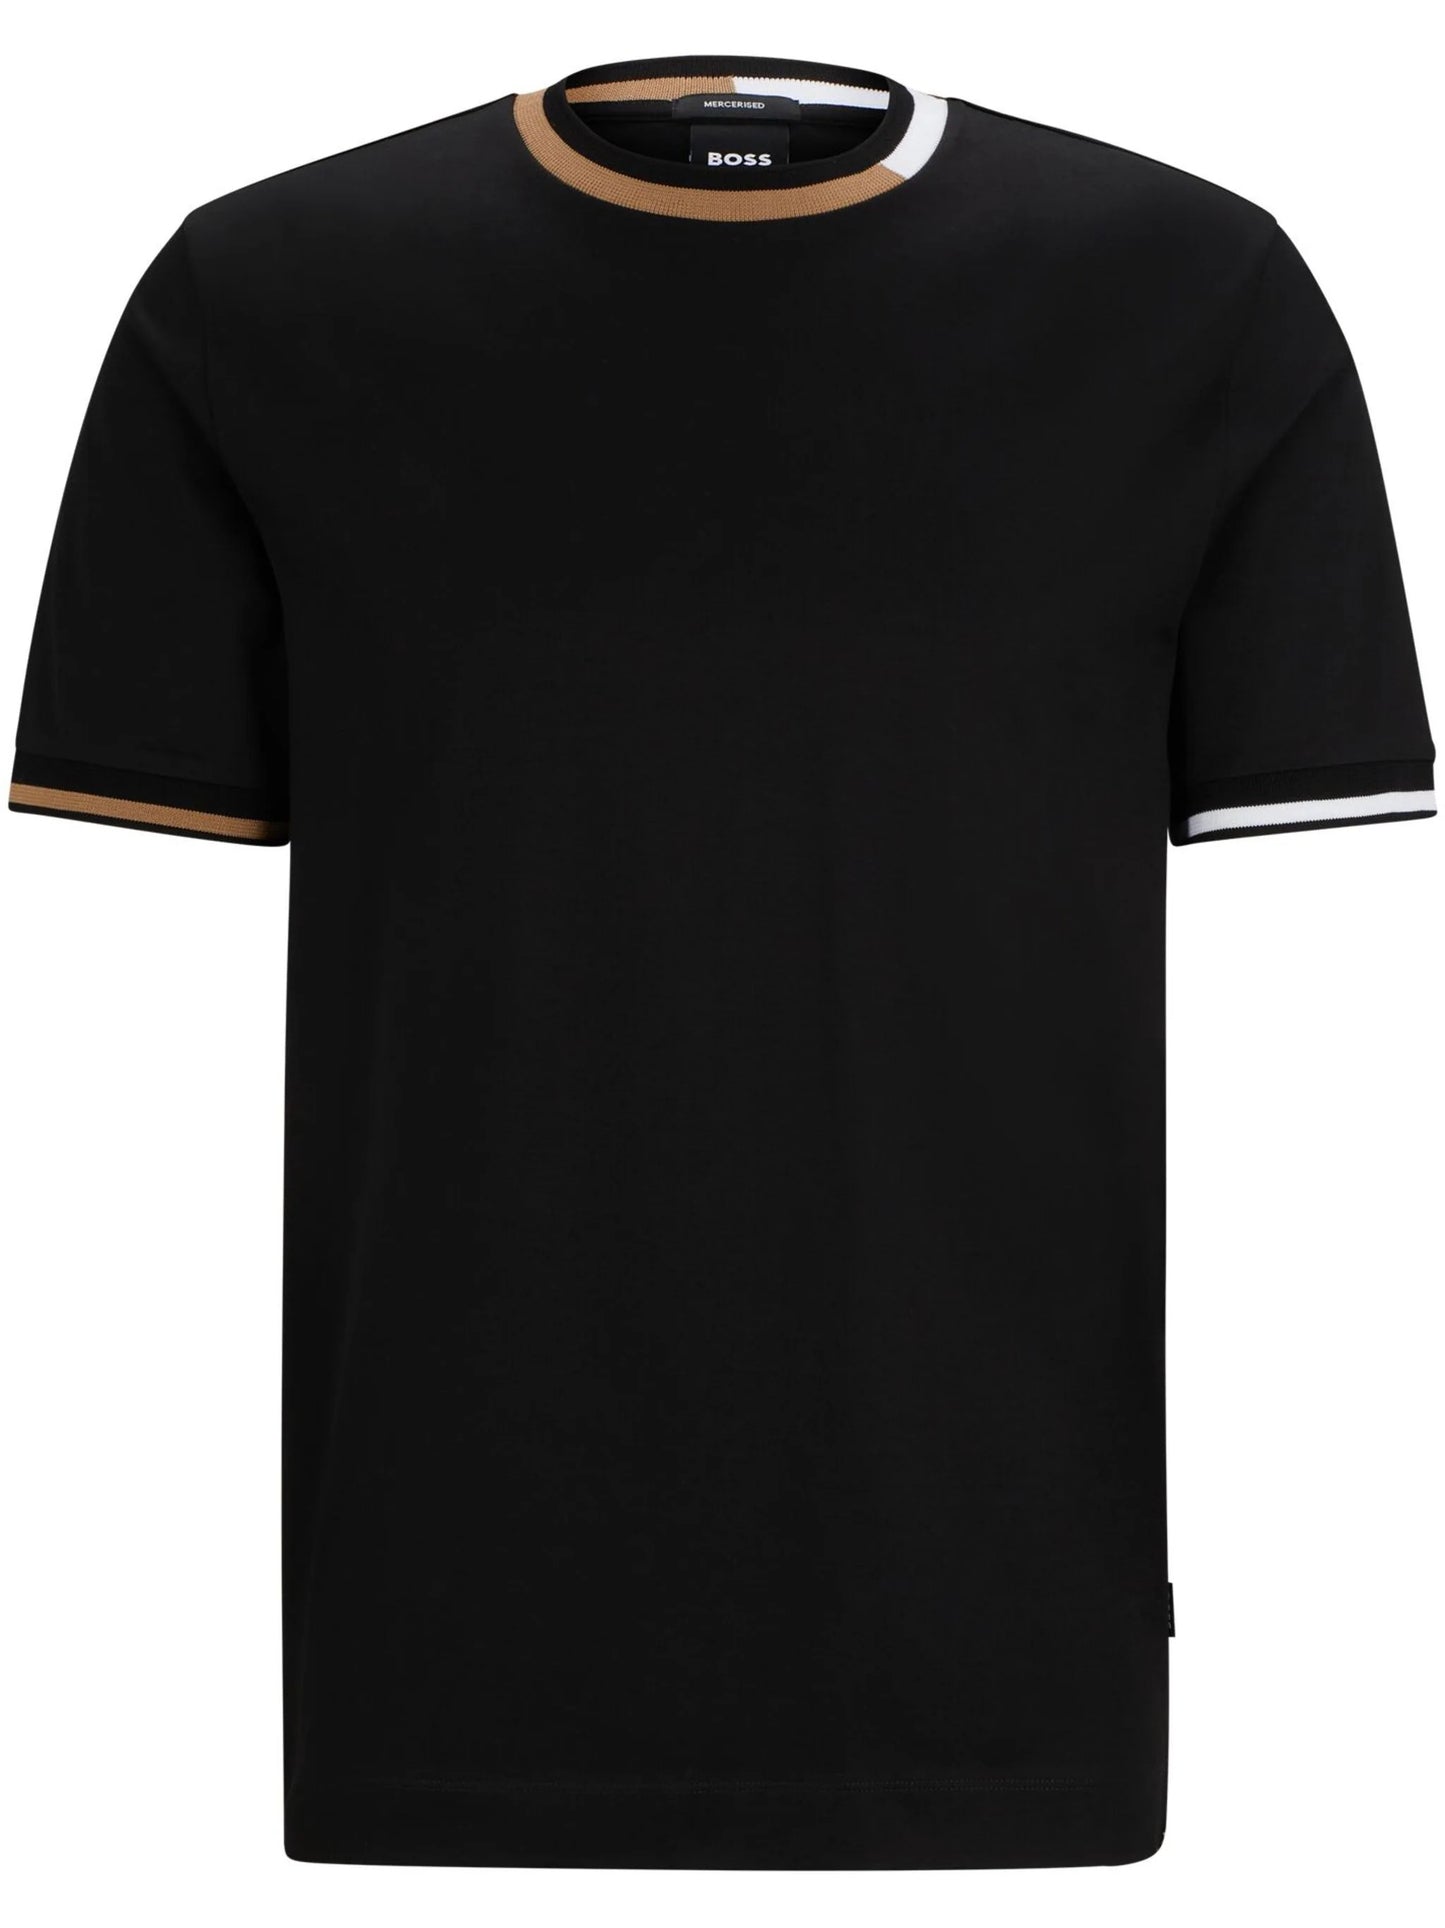 Hugo Boss Men's Thompson 211 Crew Neck T-Shirt with Branded Logo, Black